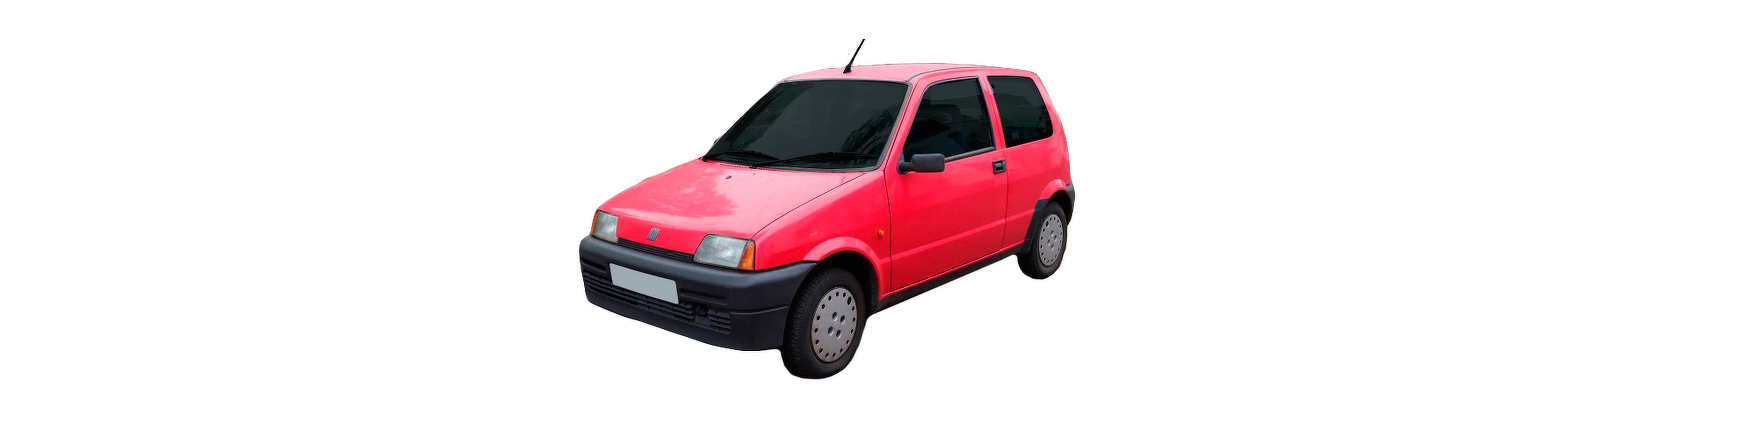 Recambios de Fiat Cinquecento de 1992 1993 1994 1995 1996 1997 1998